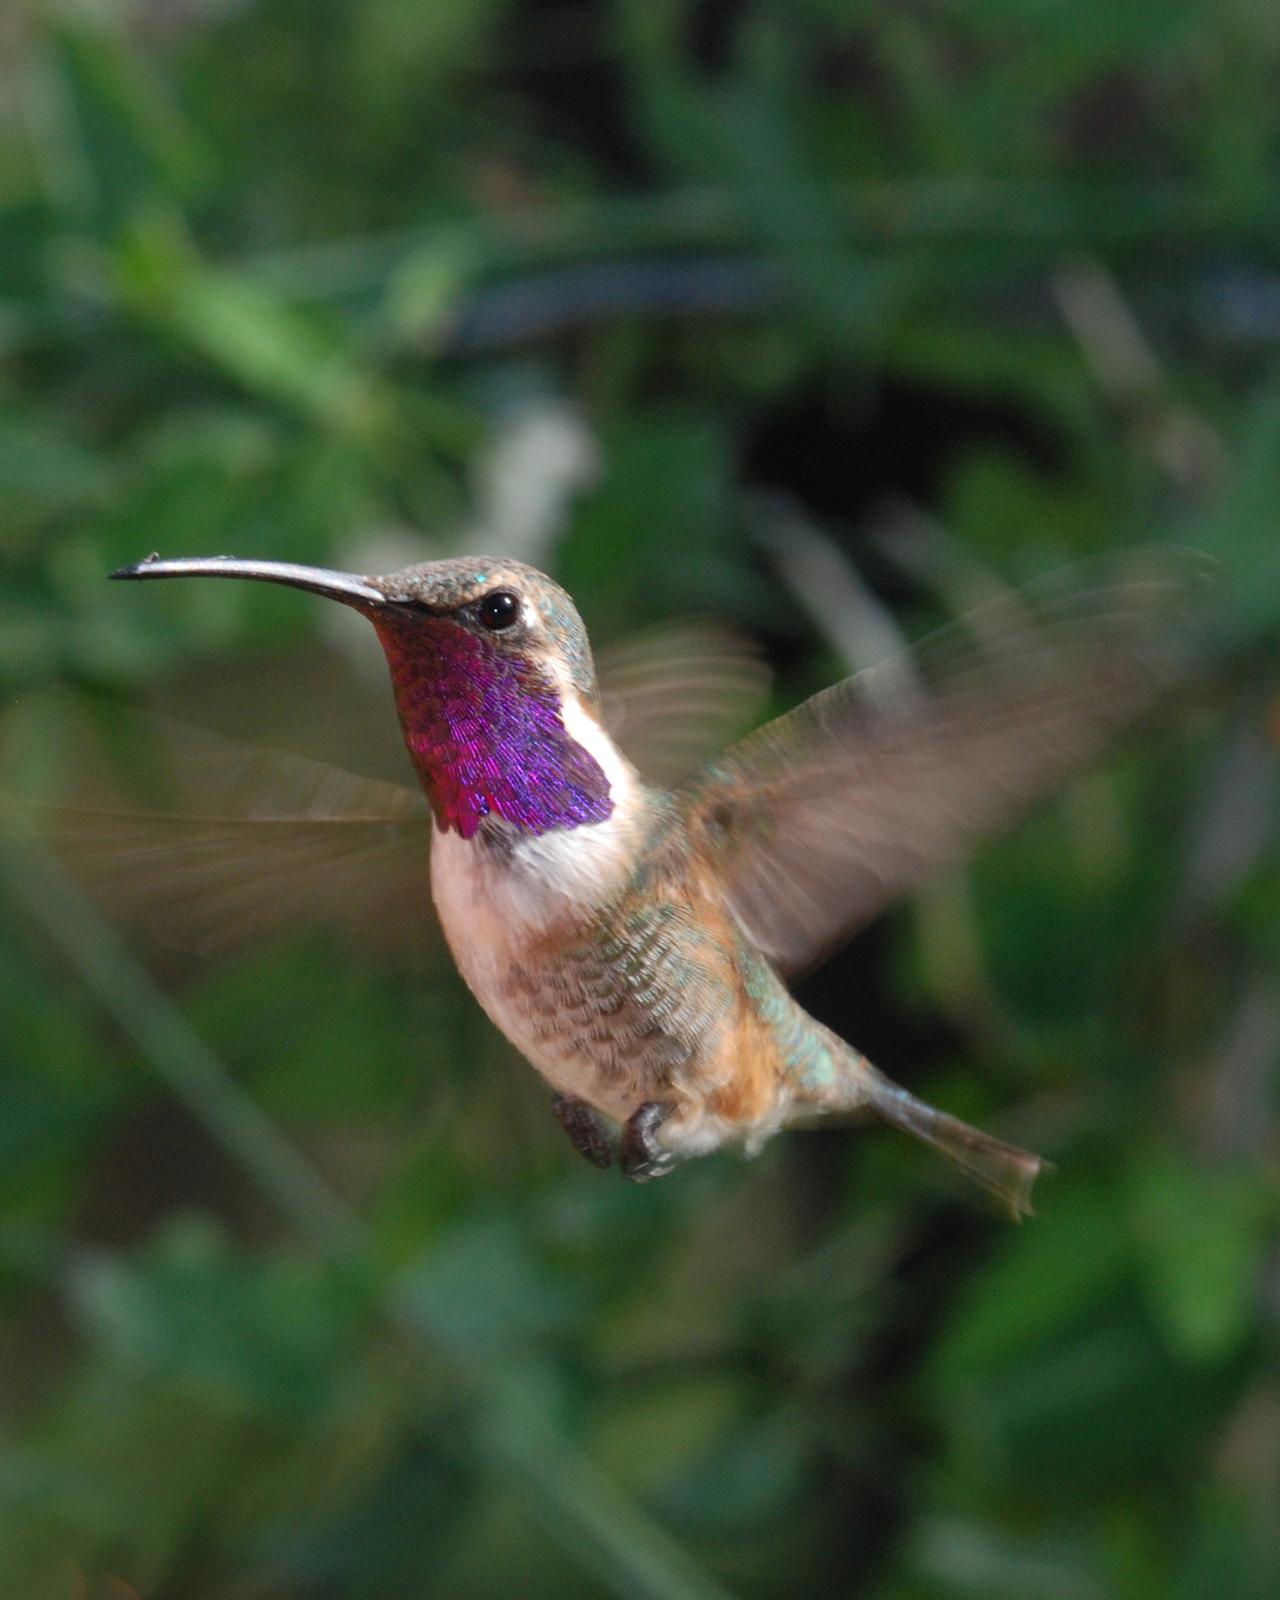 Lucifer Hummingbird Photo by Robert Behrstock